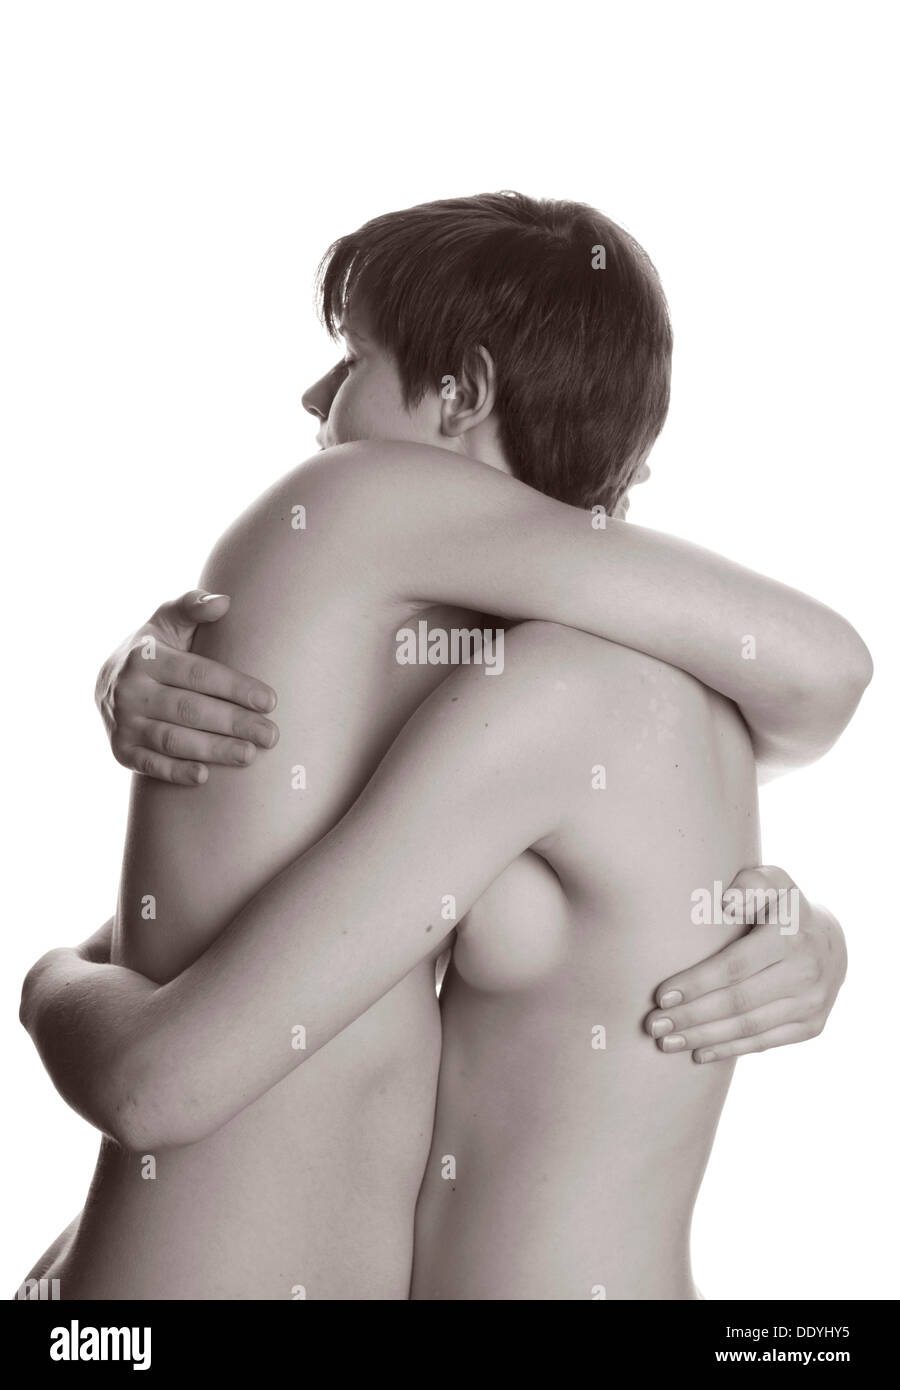 Naked couple hug